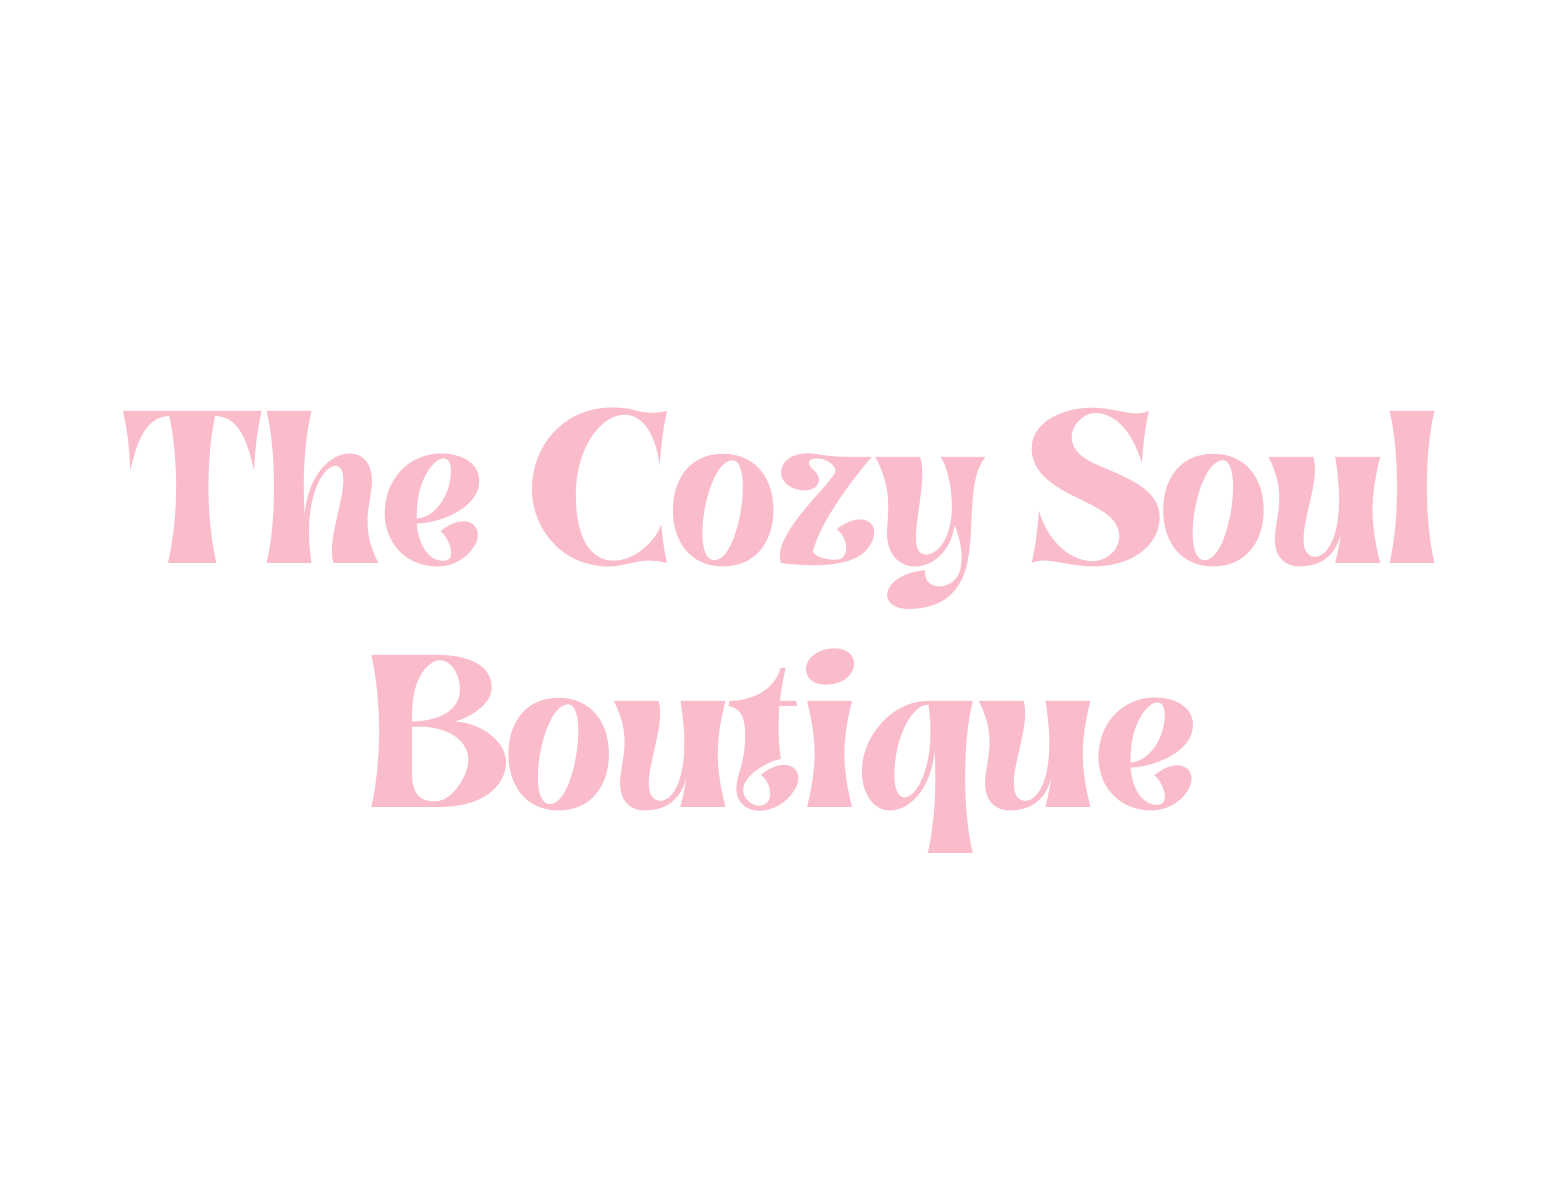 The Cozy Soul Boutique